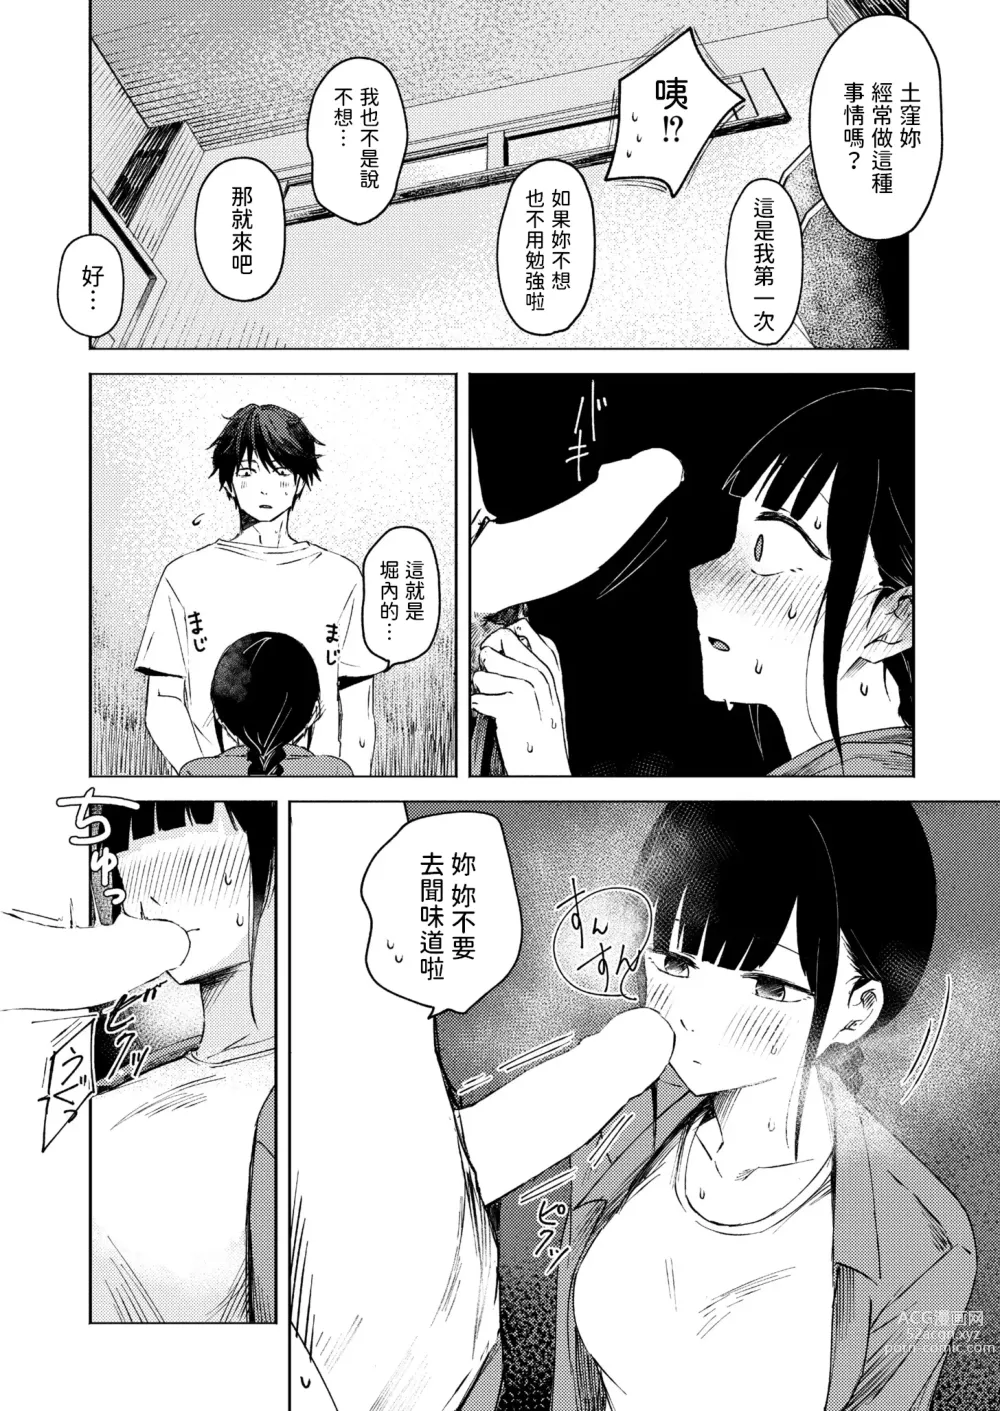 Page 6 of manga Shuukaku Ari